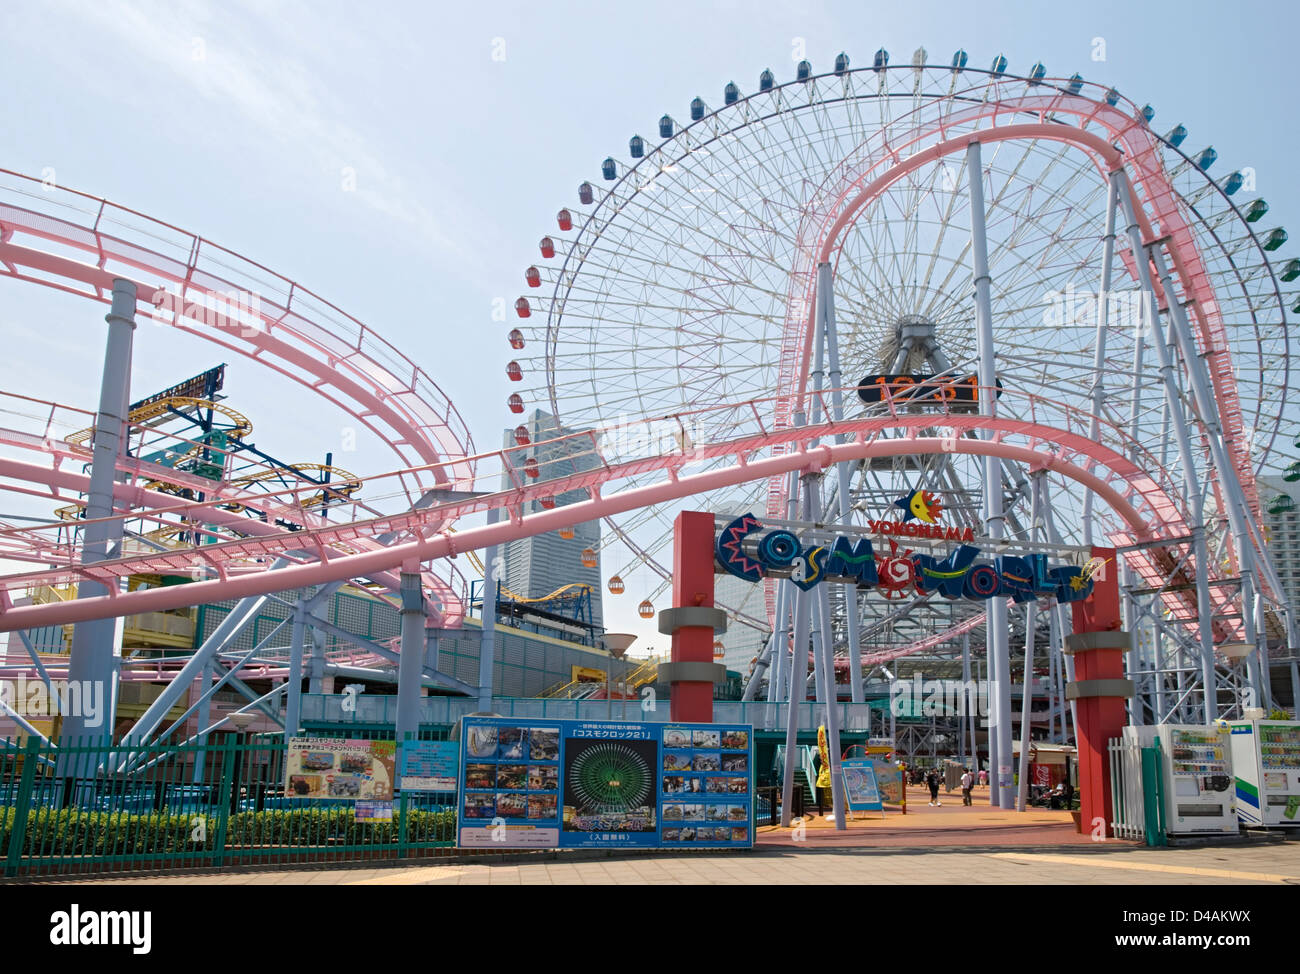 Orologio ruota panoramica Ferris al Cosmo World parco divertimenti sul lungomare di Yokohama, Giappone. Foto Stock